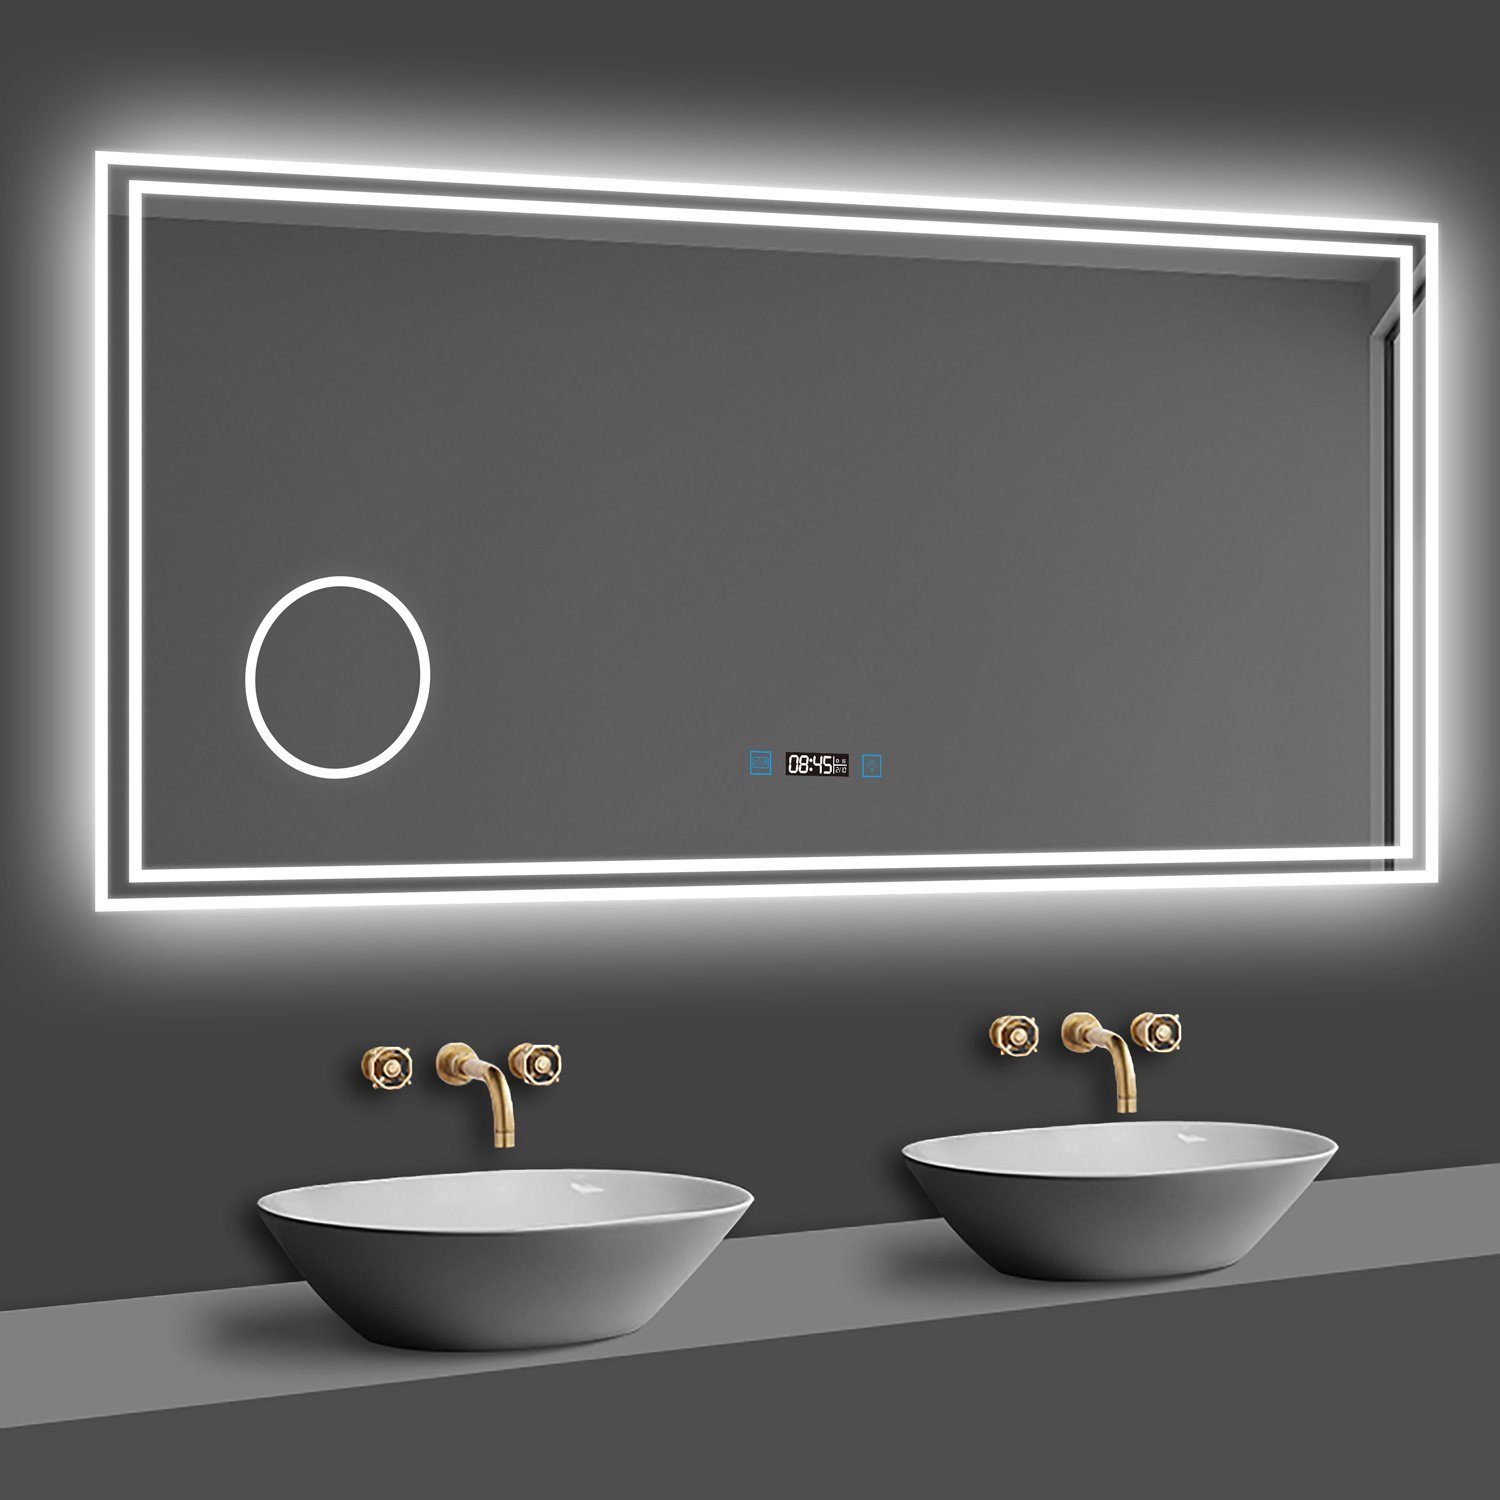 duschspa Зеркало для ванной комнаты 80-160cm mit LED, Uhr, Beschlagfrei, Schminkspiegel, Kalt/Warm/Neutral Licht, dimmbar, Helligkeit-Speicherfunktion